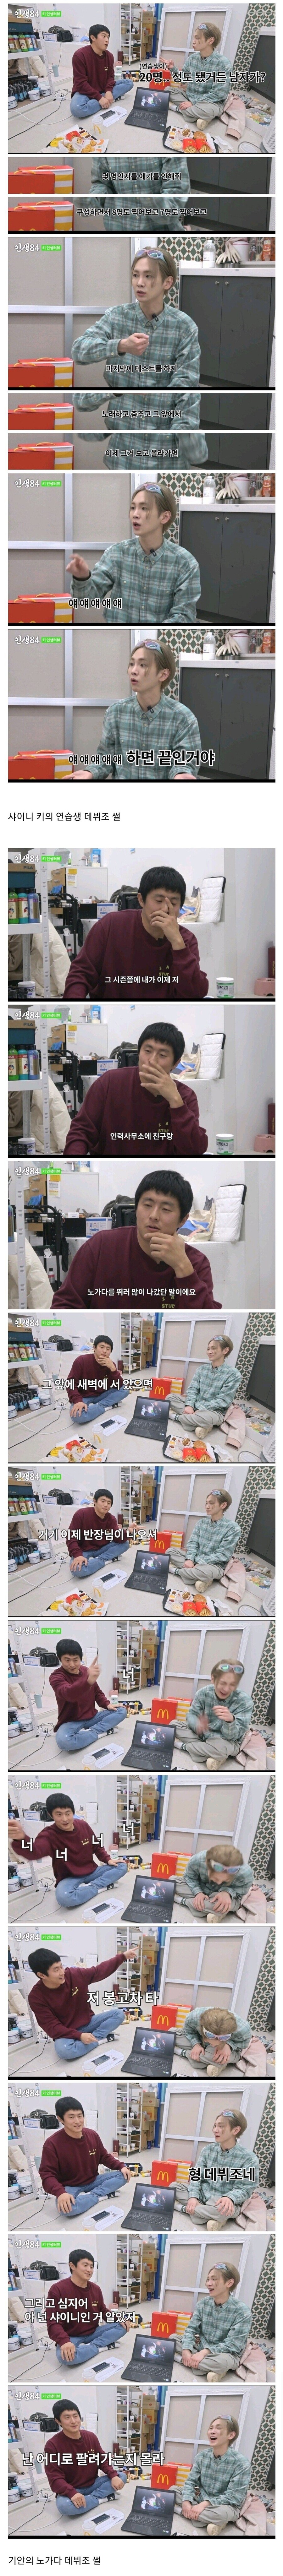 [잡담] 기안84가 본 아이돌 연습생 vs 노가닼ㅋㅋㅋㅂㄱ | 인스티즈